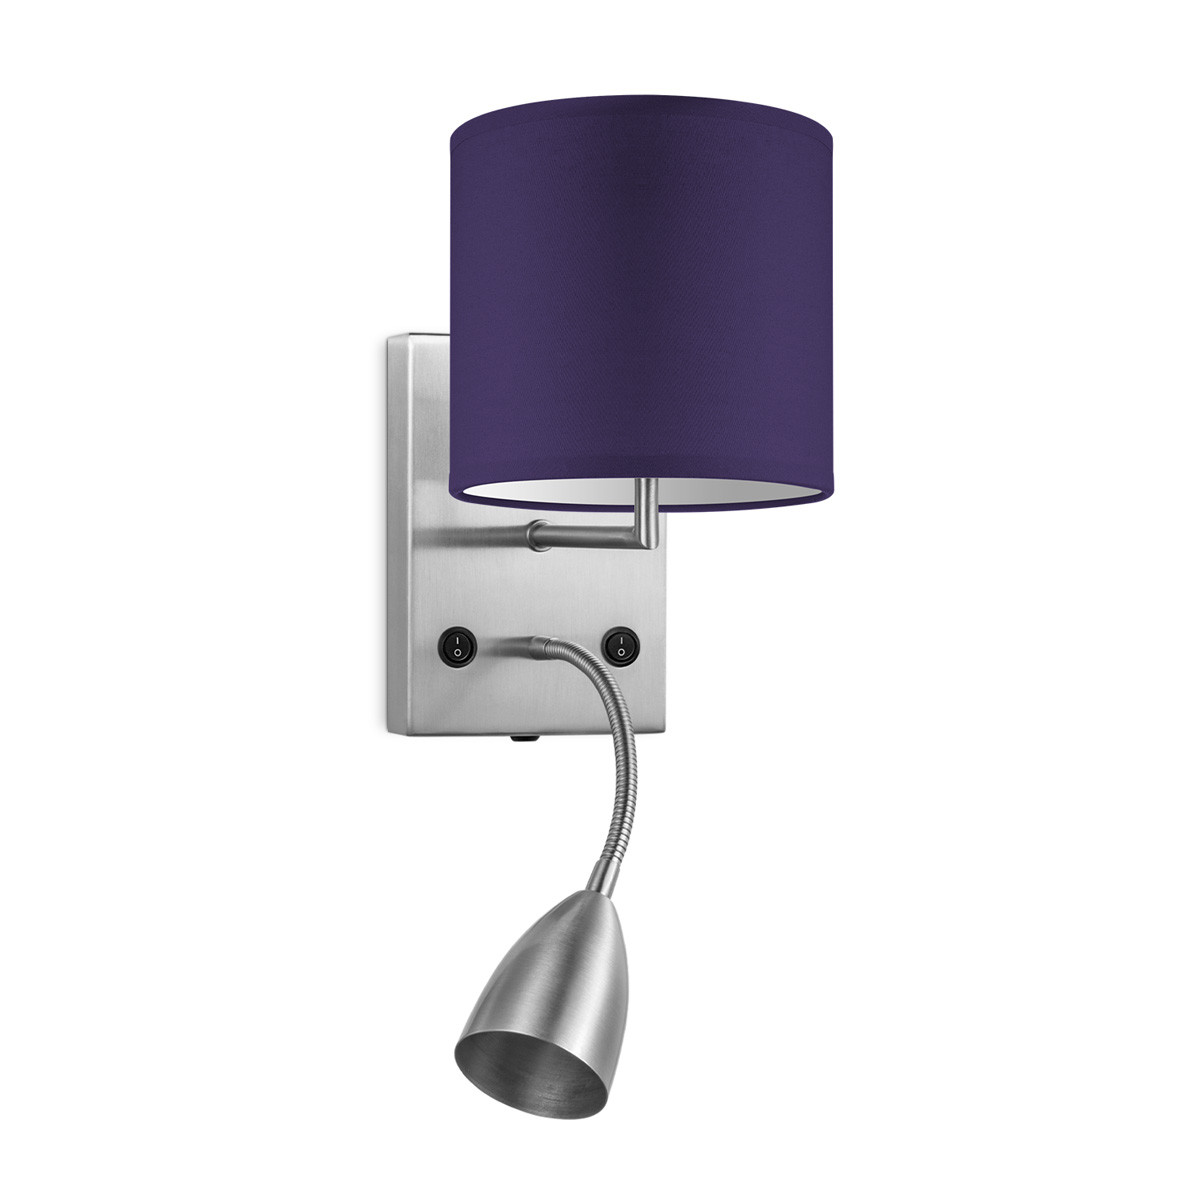 Light depot - wandlamp read bling Ø 16 cm - paars - Outlet